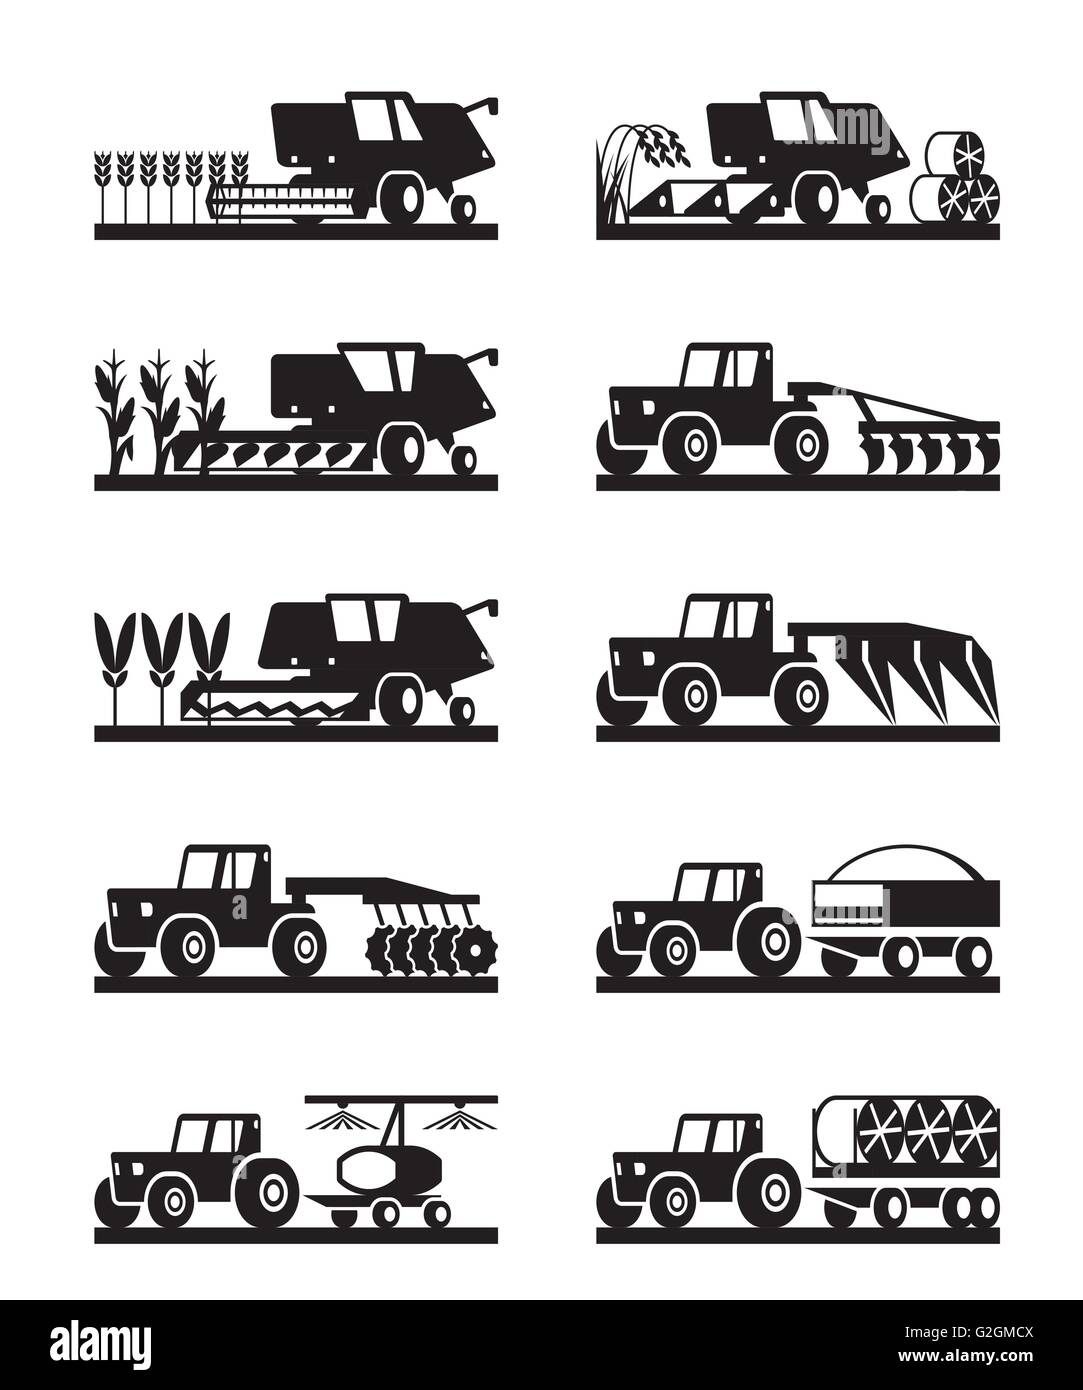 Landmaschinen im Feld - Vektor-illustration Stock Vektor